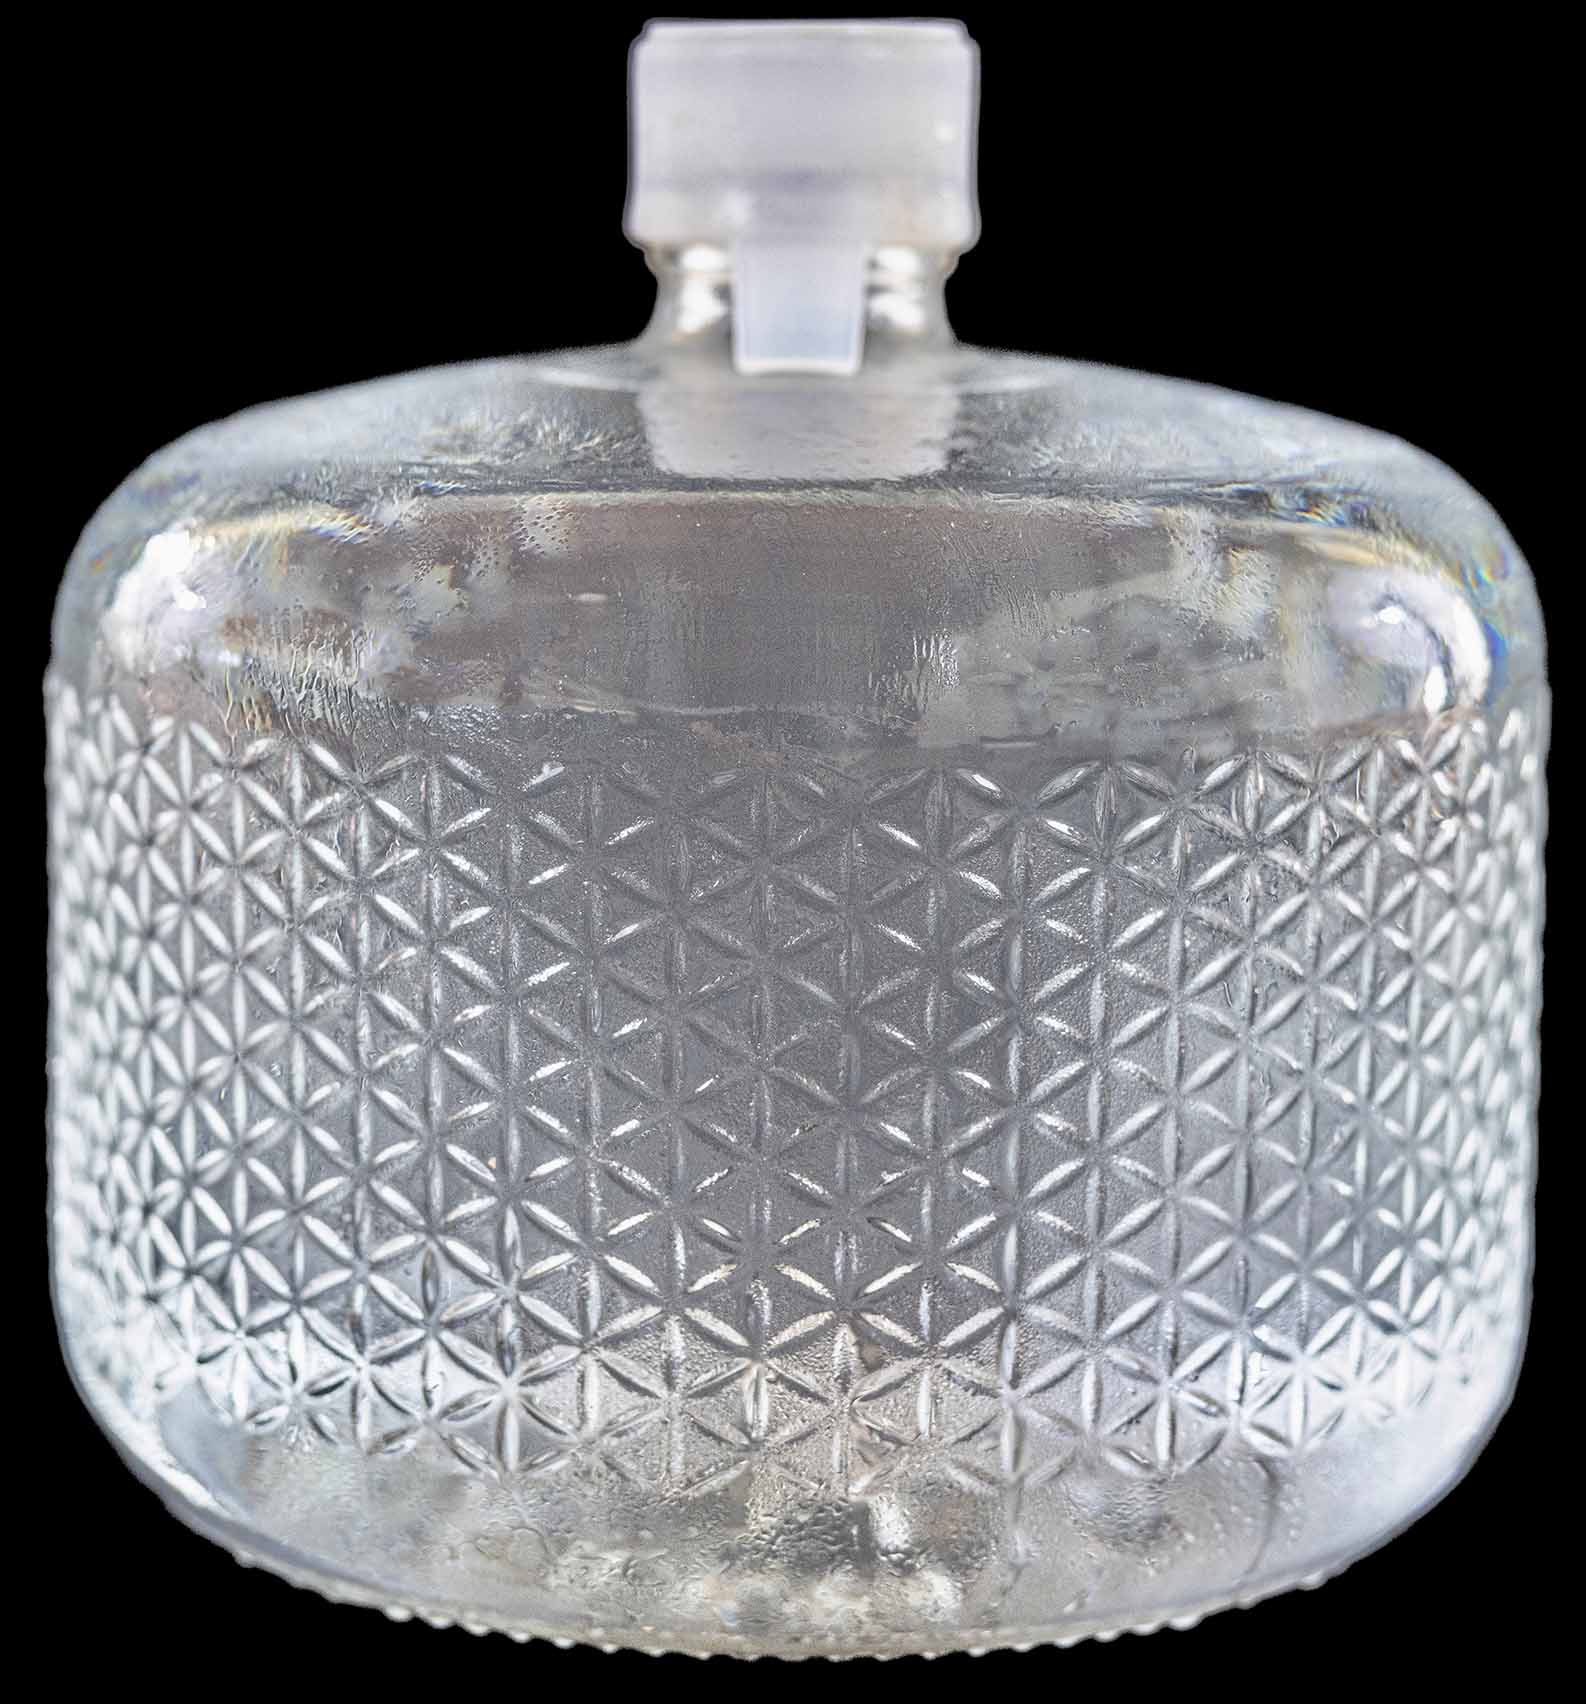  Nestle Pure Life - Agua purificada de manantial embotellada de  8 onzas, paquete de 24 botellas de agua embotellada, mini botellas de agua  de 8 onzas, paquete de 24 : Comida Gourmet y Alimentos